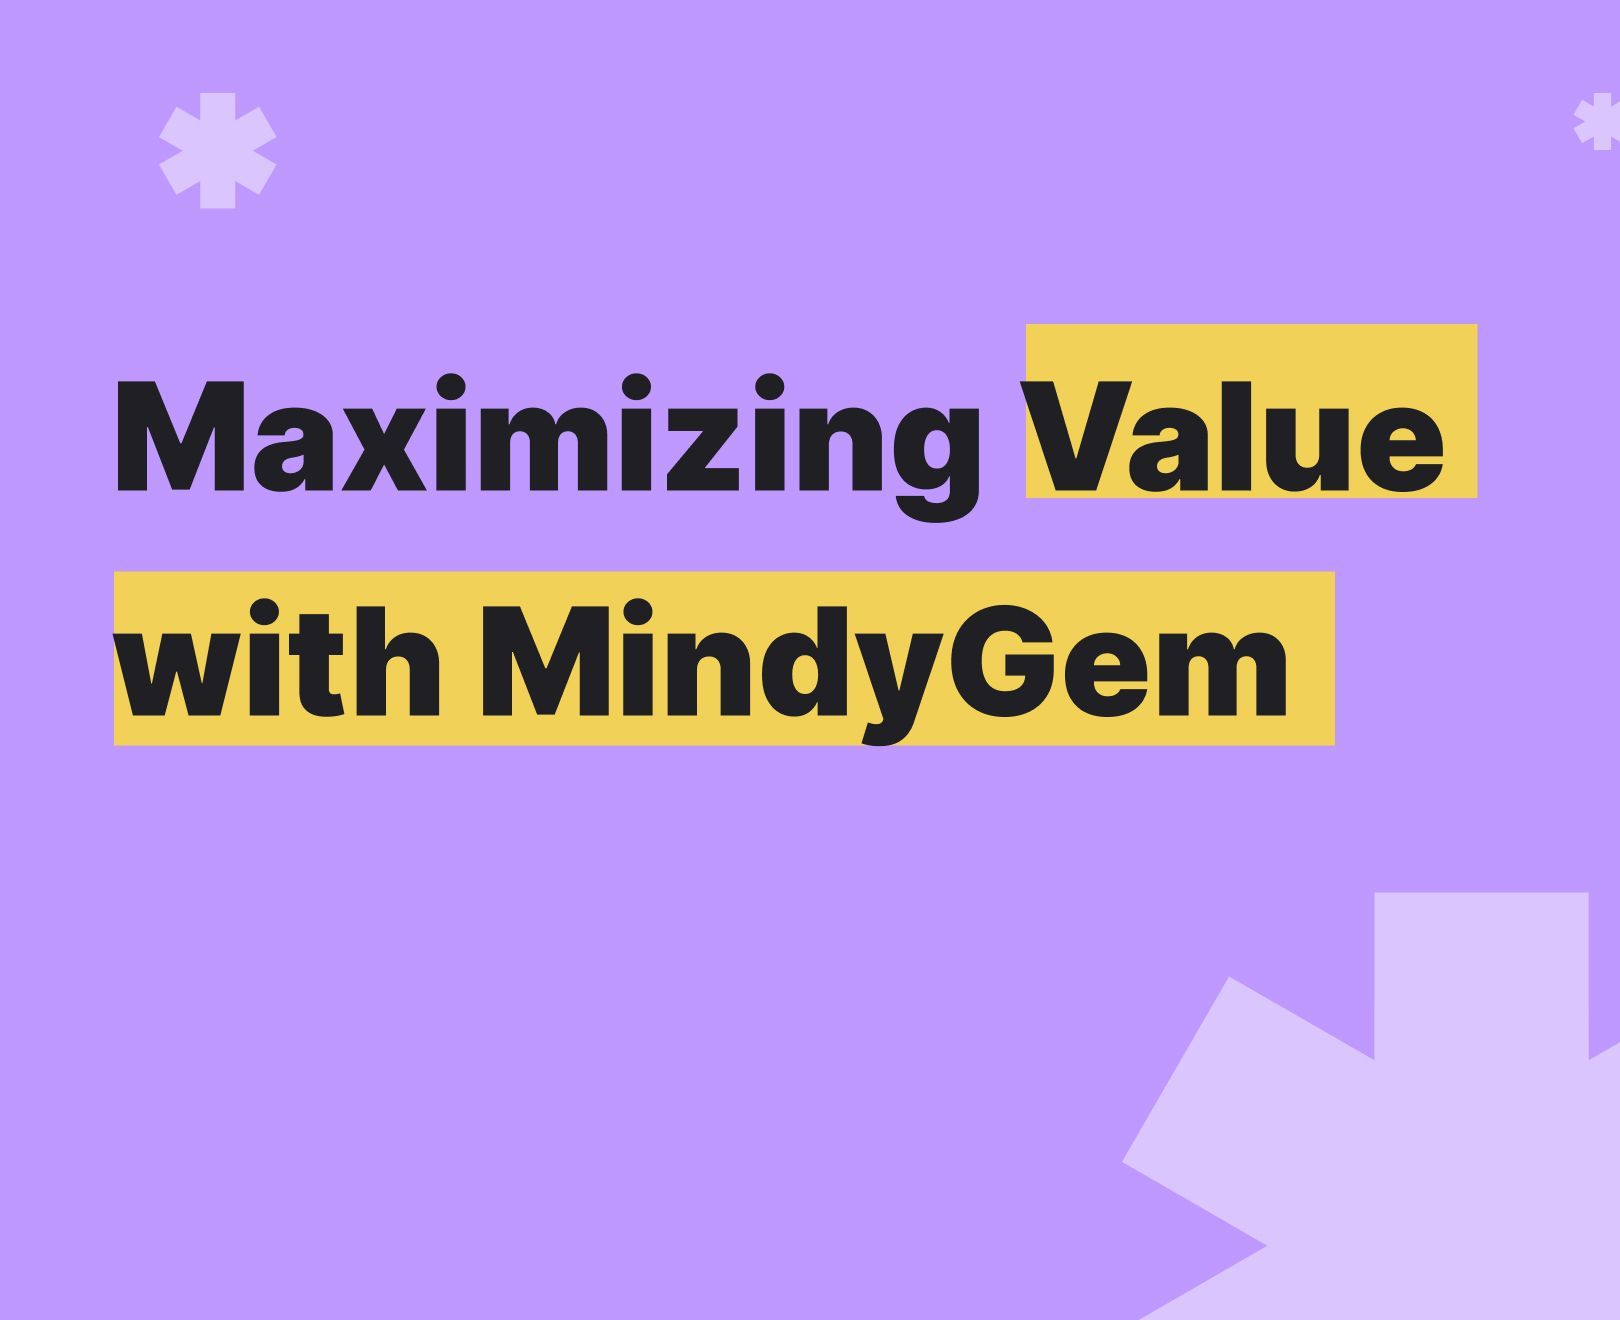 Maximize value with Mindygem